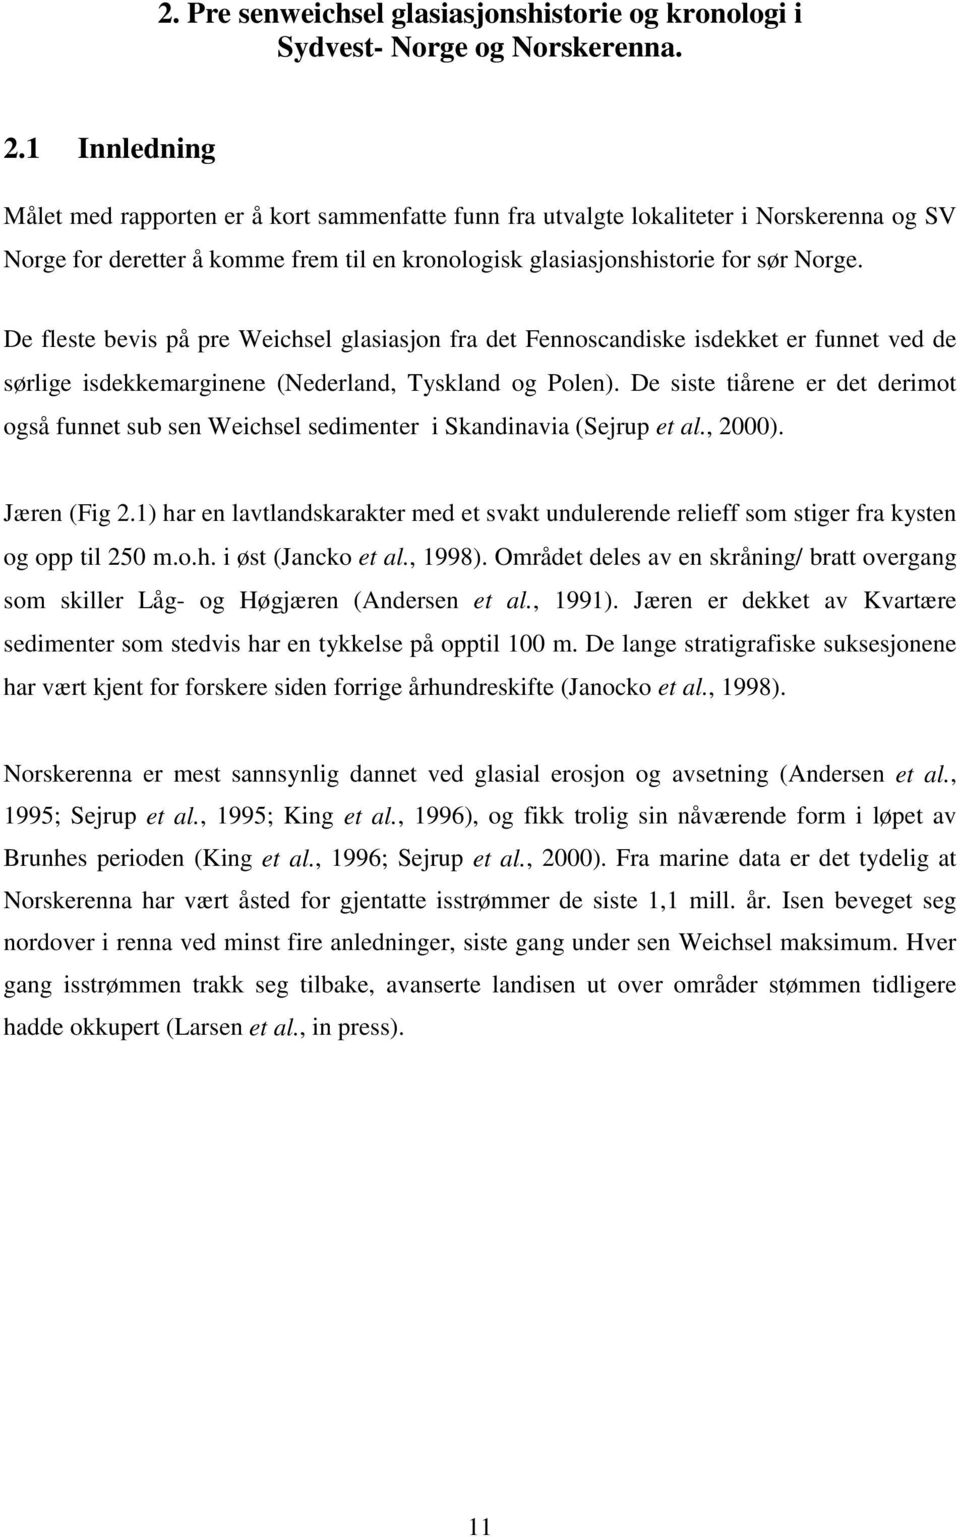 De fleste bevis på pre Weichsel glasiasjon fra det Fennoscandiske isdekket er funnet ved de sørlige isdekkemarginene (Nederland, Tyskland og Polen).